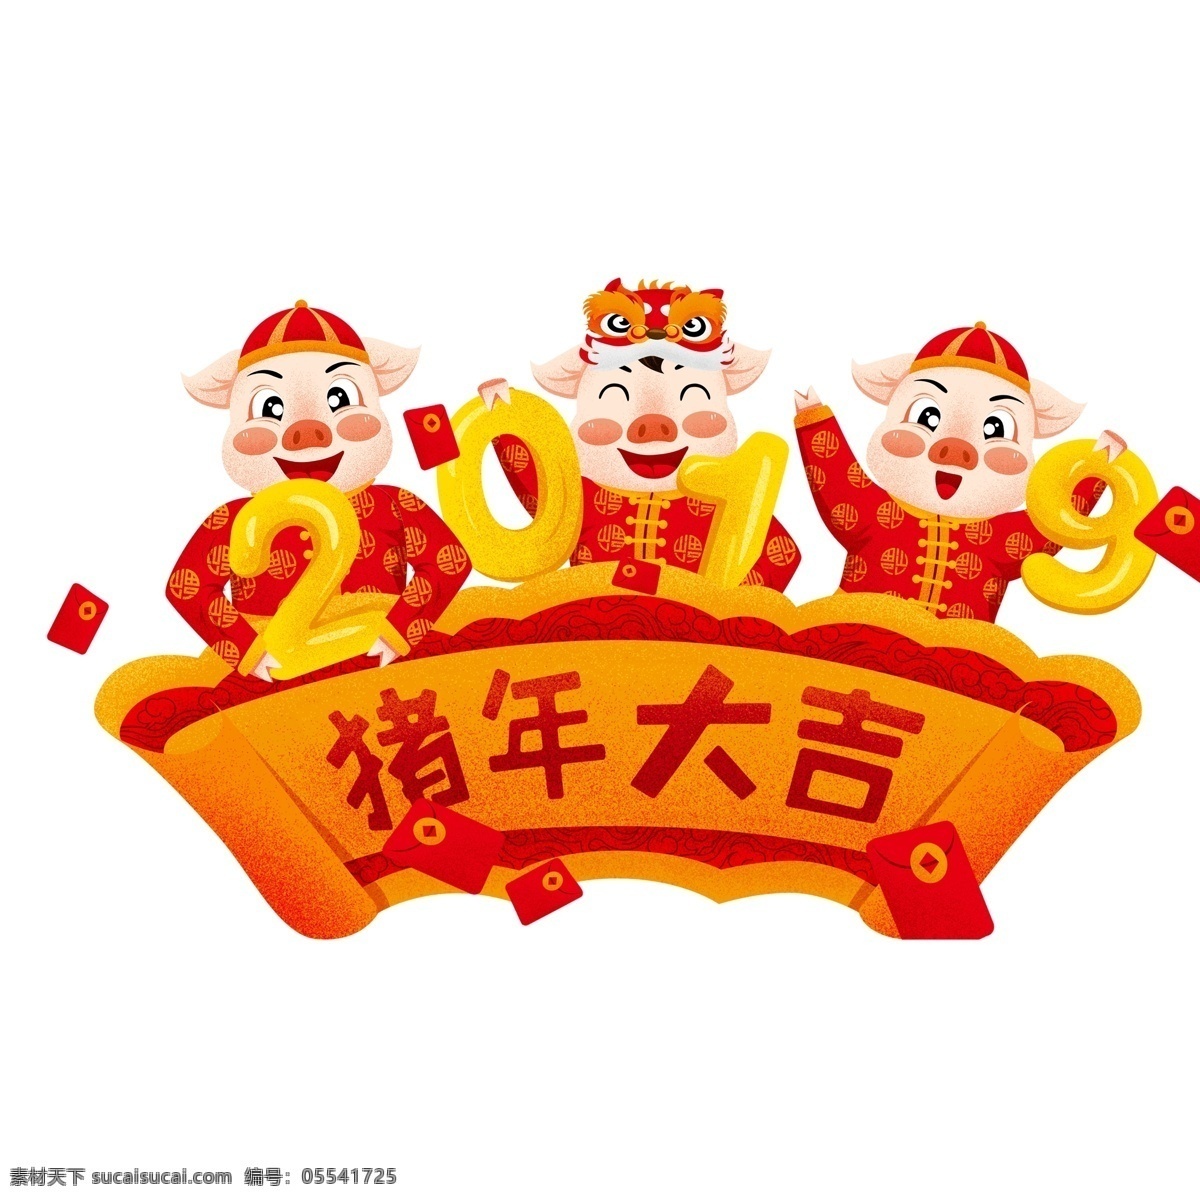 2019 猪年 大吉 喜庆 元素 横幅 创意设计 红色 黄色 2019年 逐年大吉 小猪 春节元素 插画元素